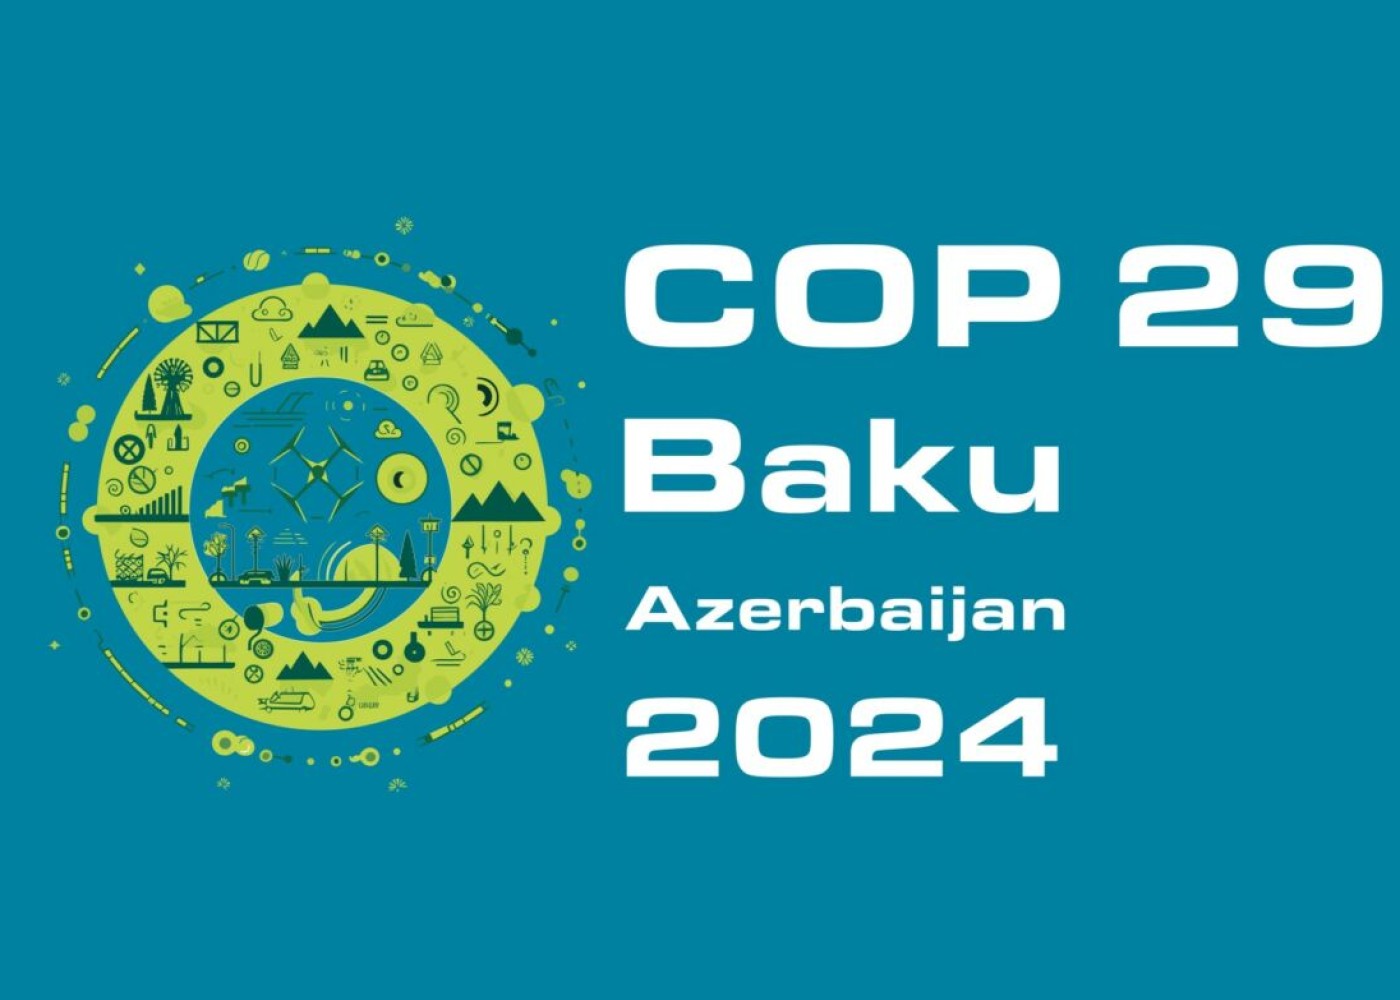 COP29-un rəsmi saytı istifadəyə verildi